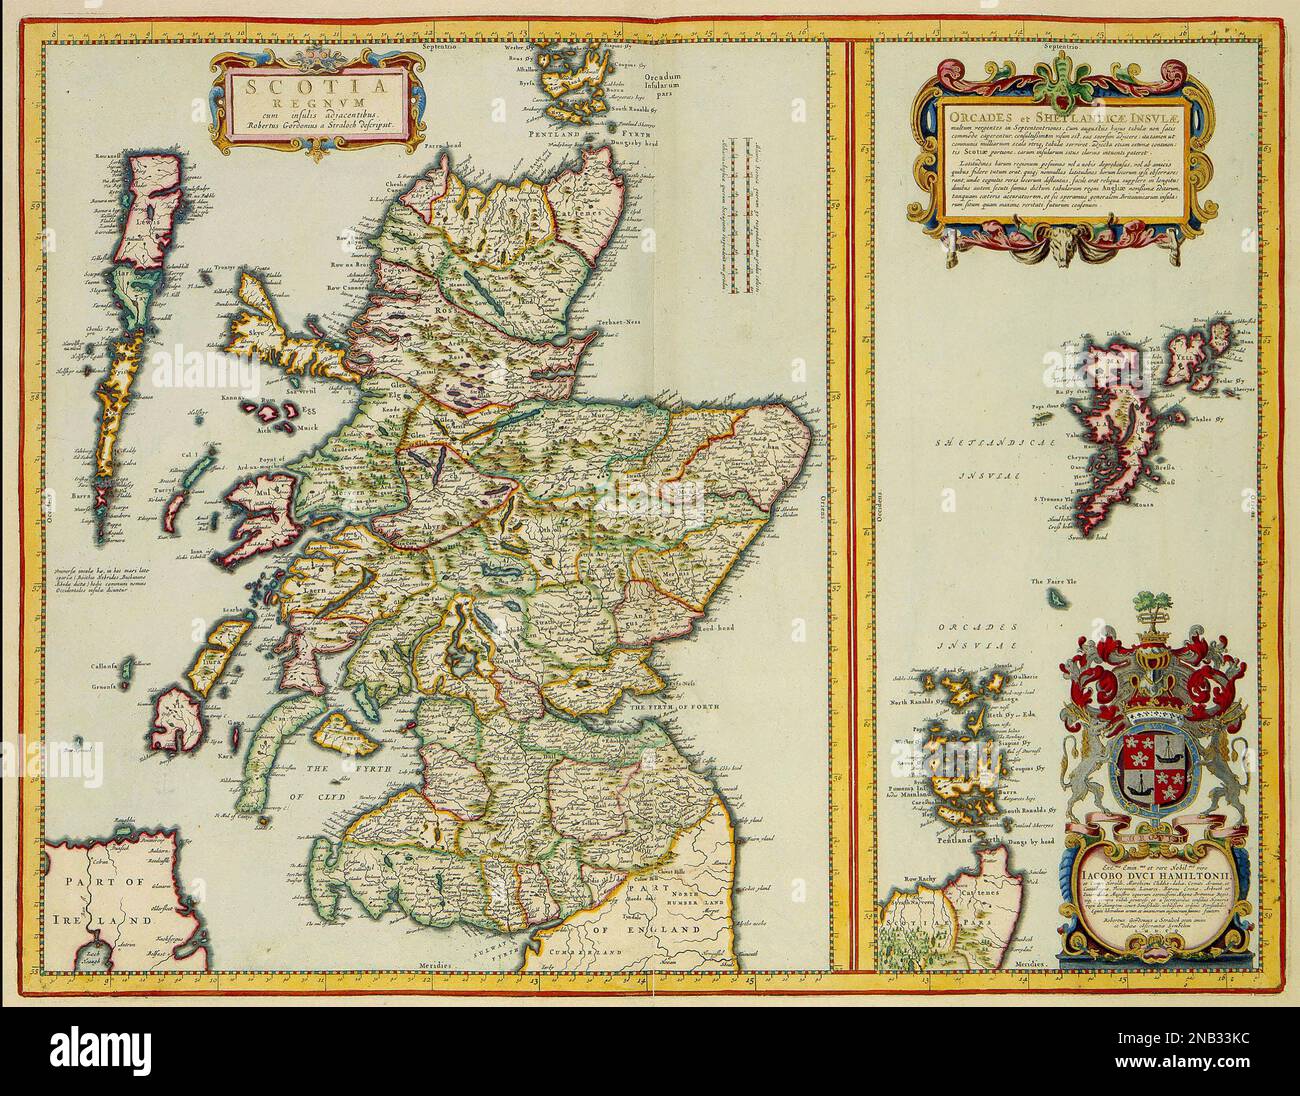 CARTE DE L'ECOSSE en 1654 par le cartographe néerlandais Joan Blaeu (1598-1673) Banque D'Images